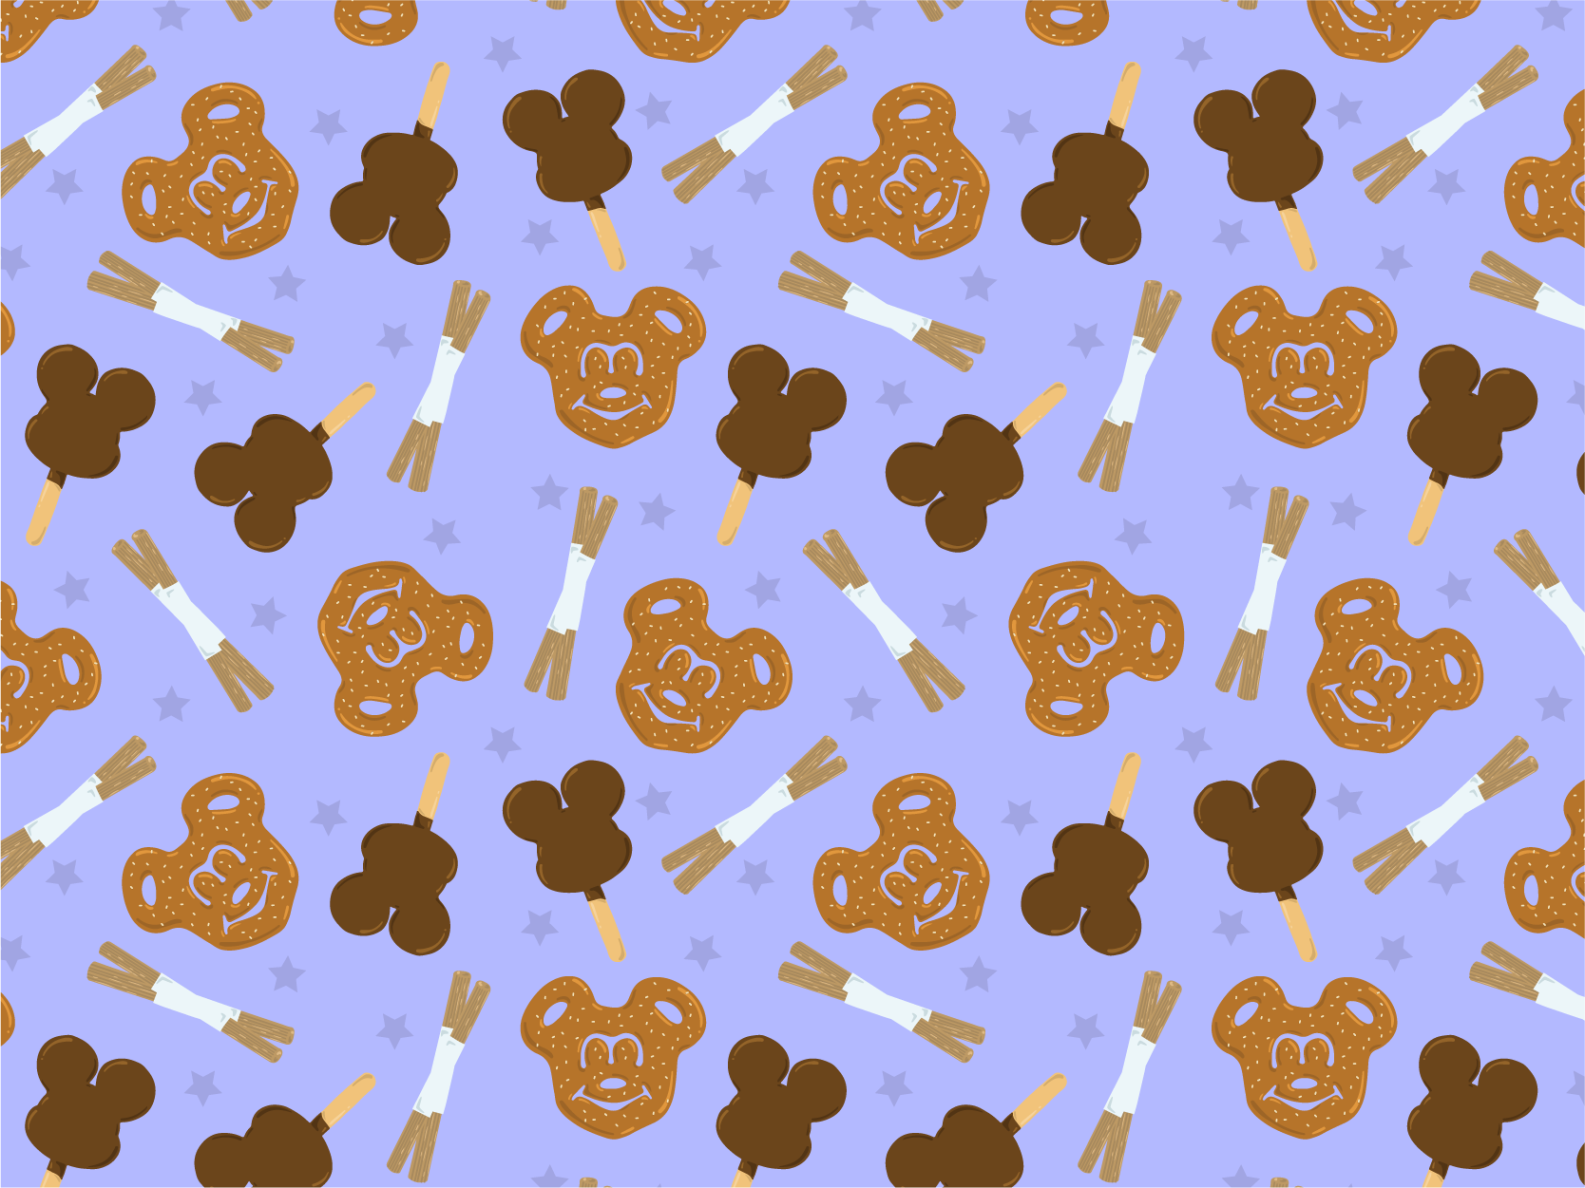 Disney Snack Wallpapers